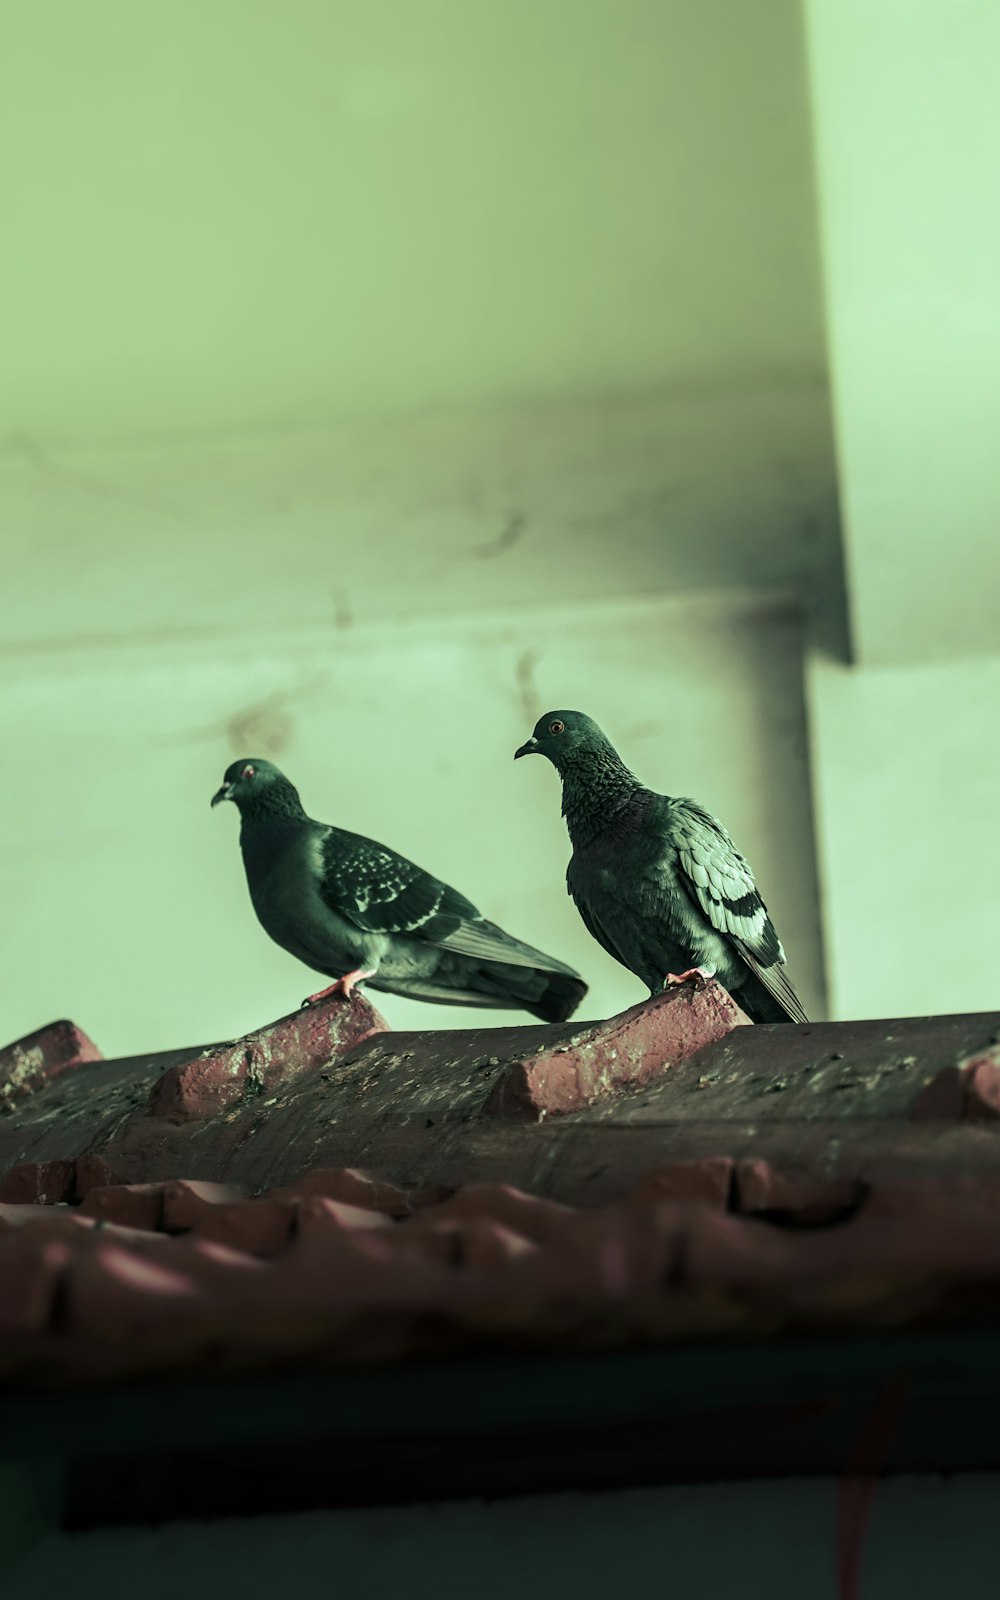 지붕 위에 나란히 앉아 있는 두 마리의 새